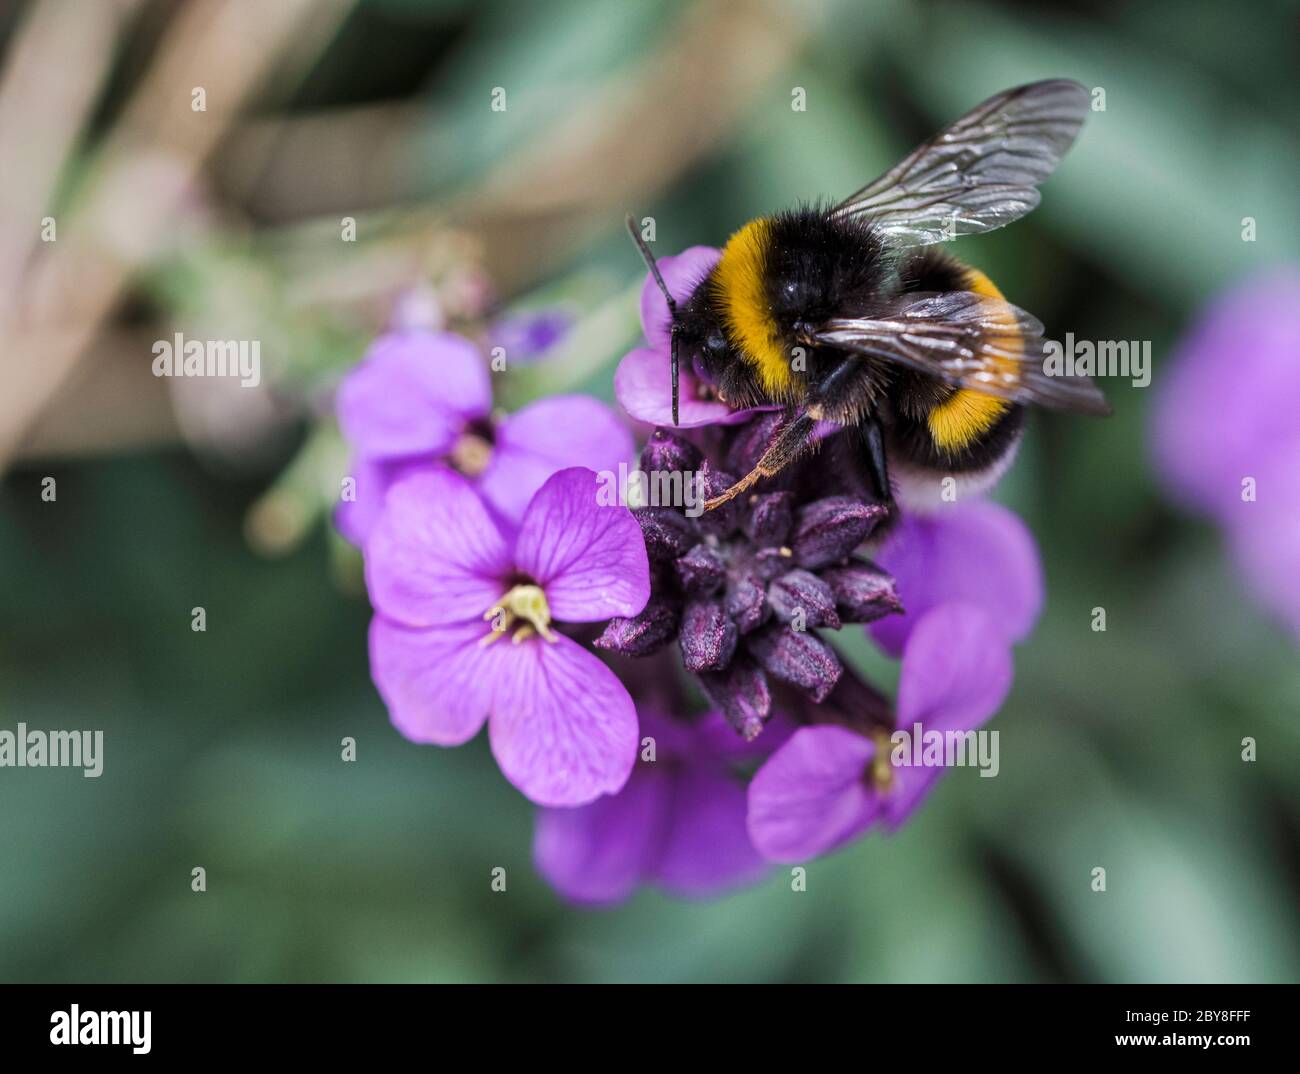 Gros plan d'une abeille collectant du miel d'une fleur d'erysimum violette sur un fond vert flou Banque D'Images